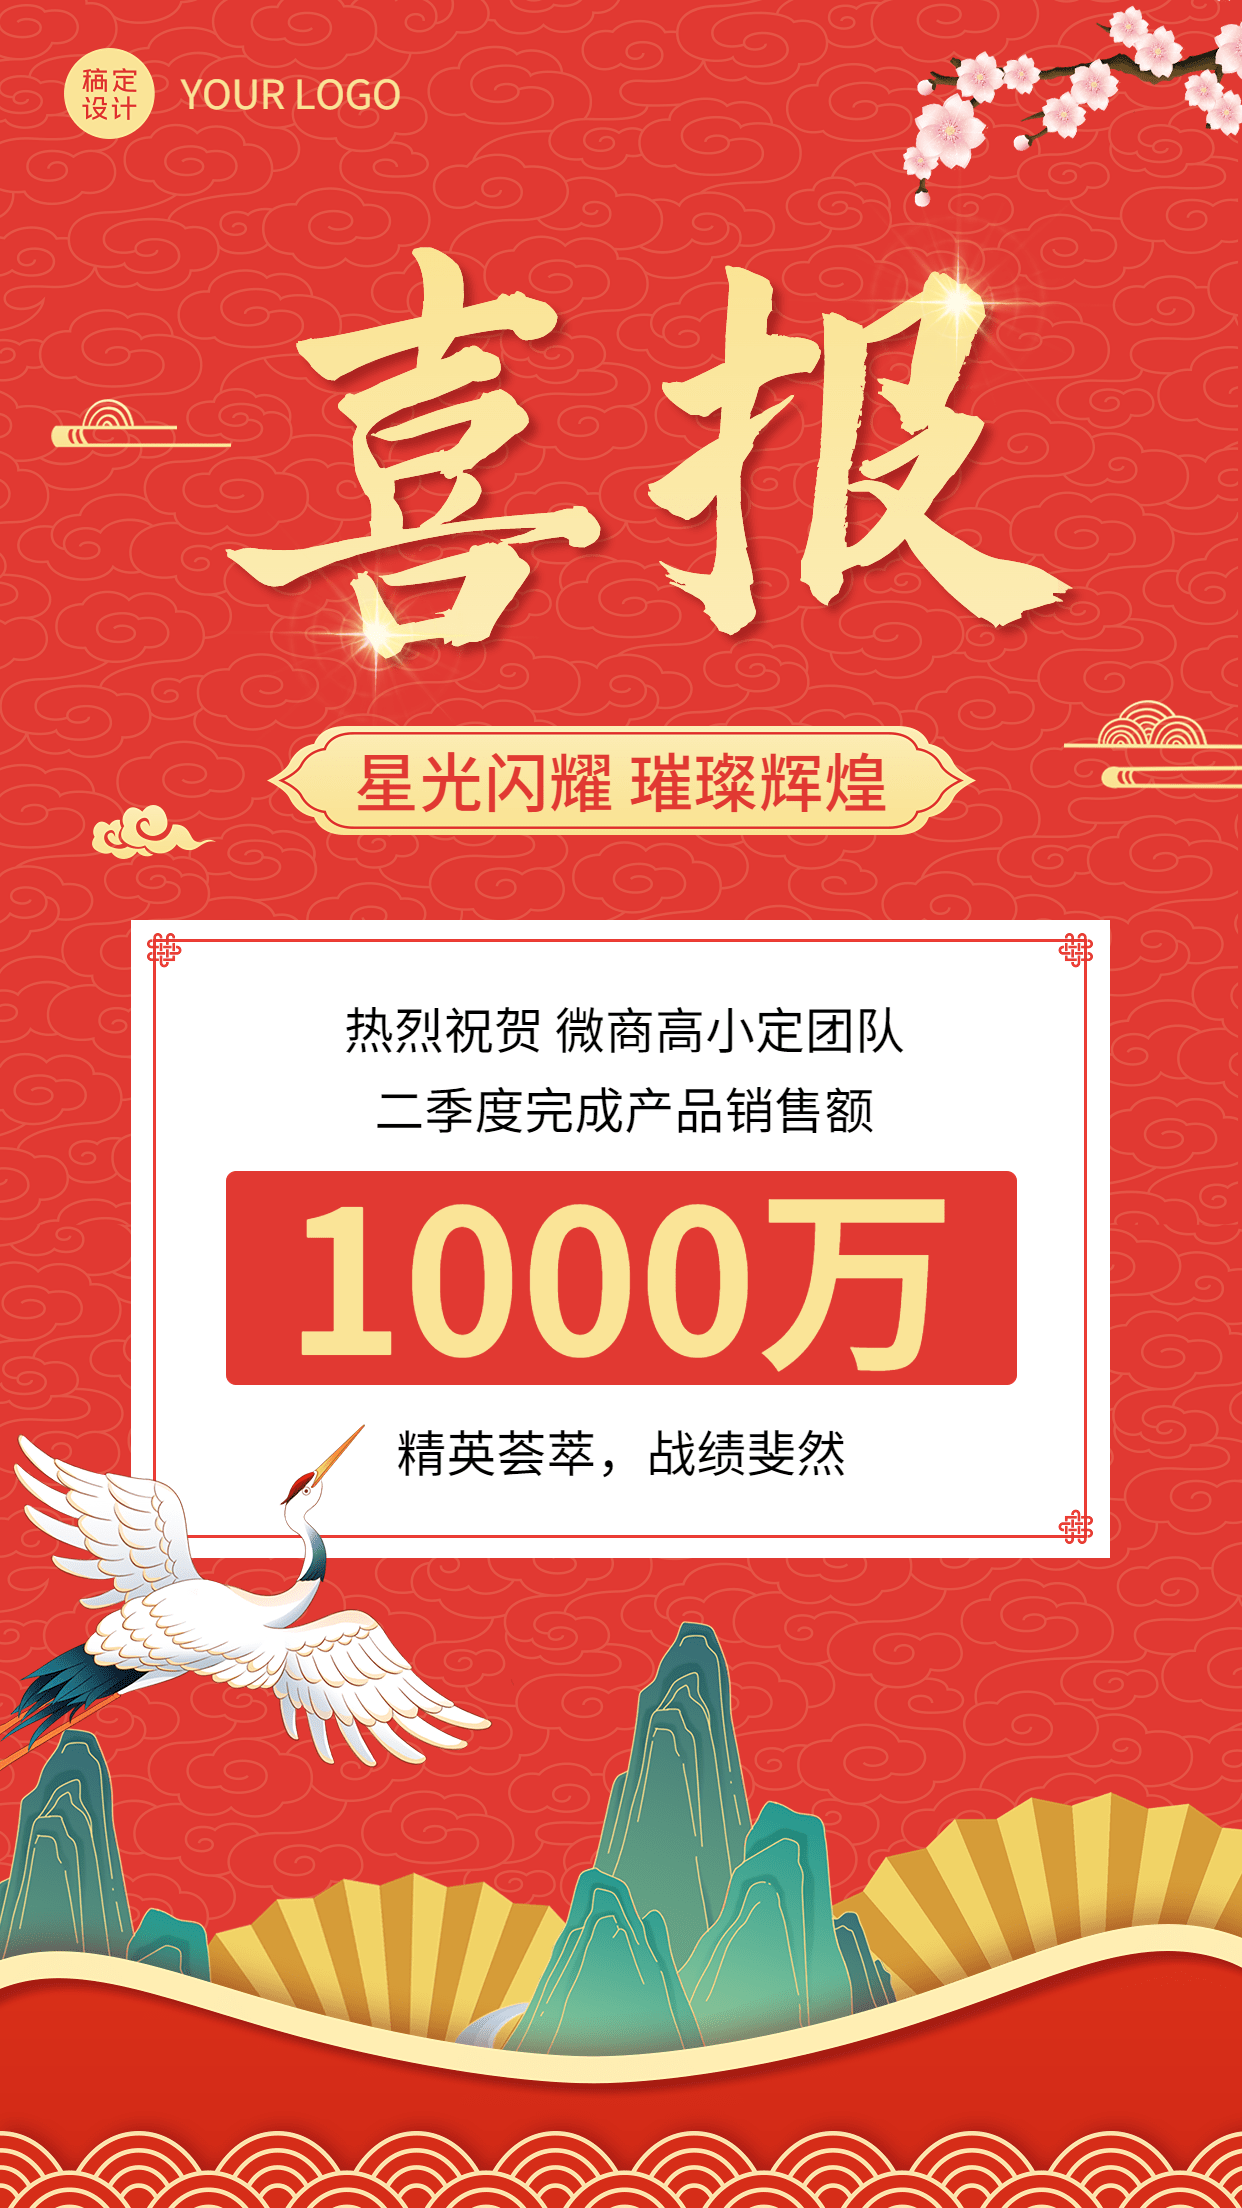 微商销售业绩表彰喜报贺报中国风插画手机海报